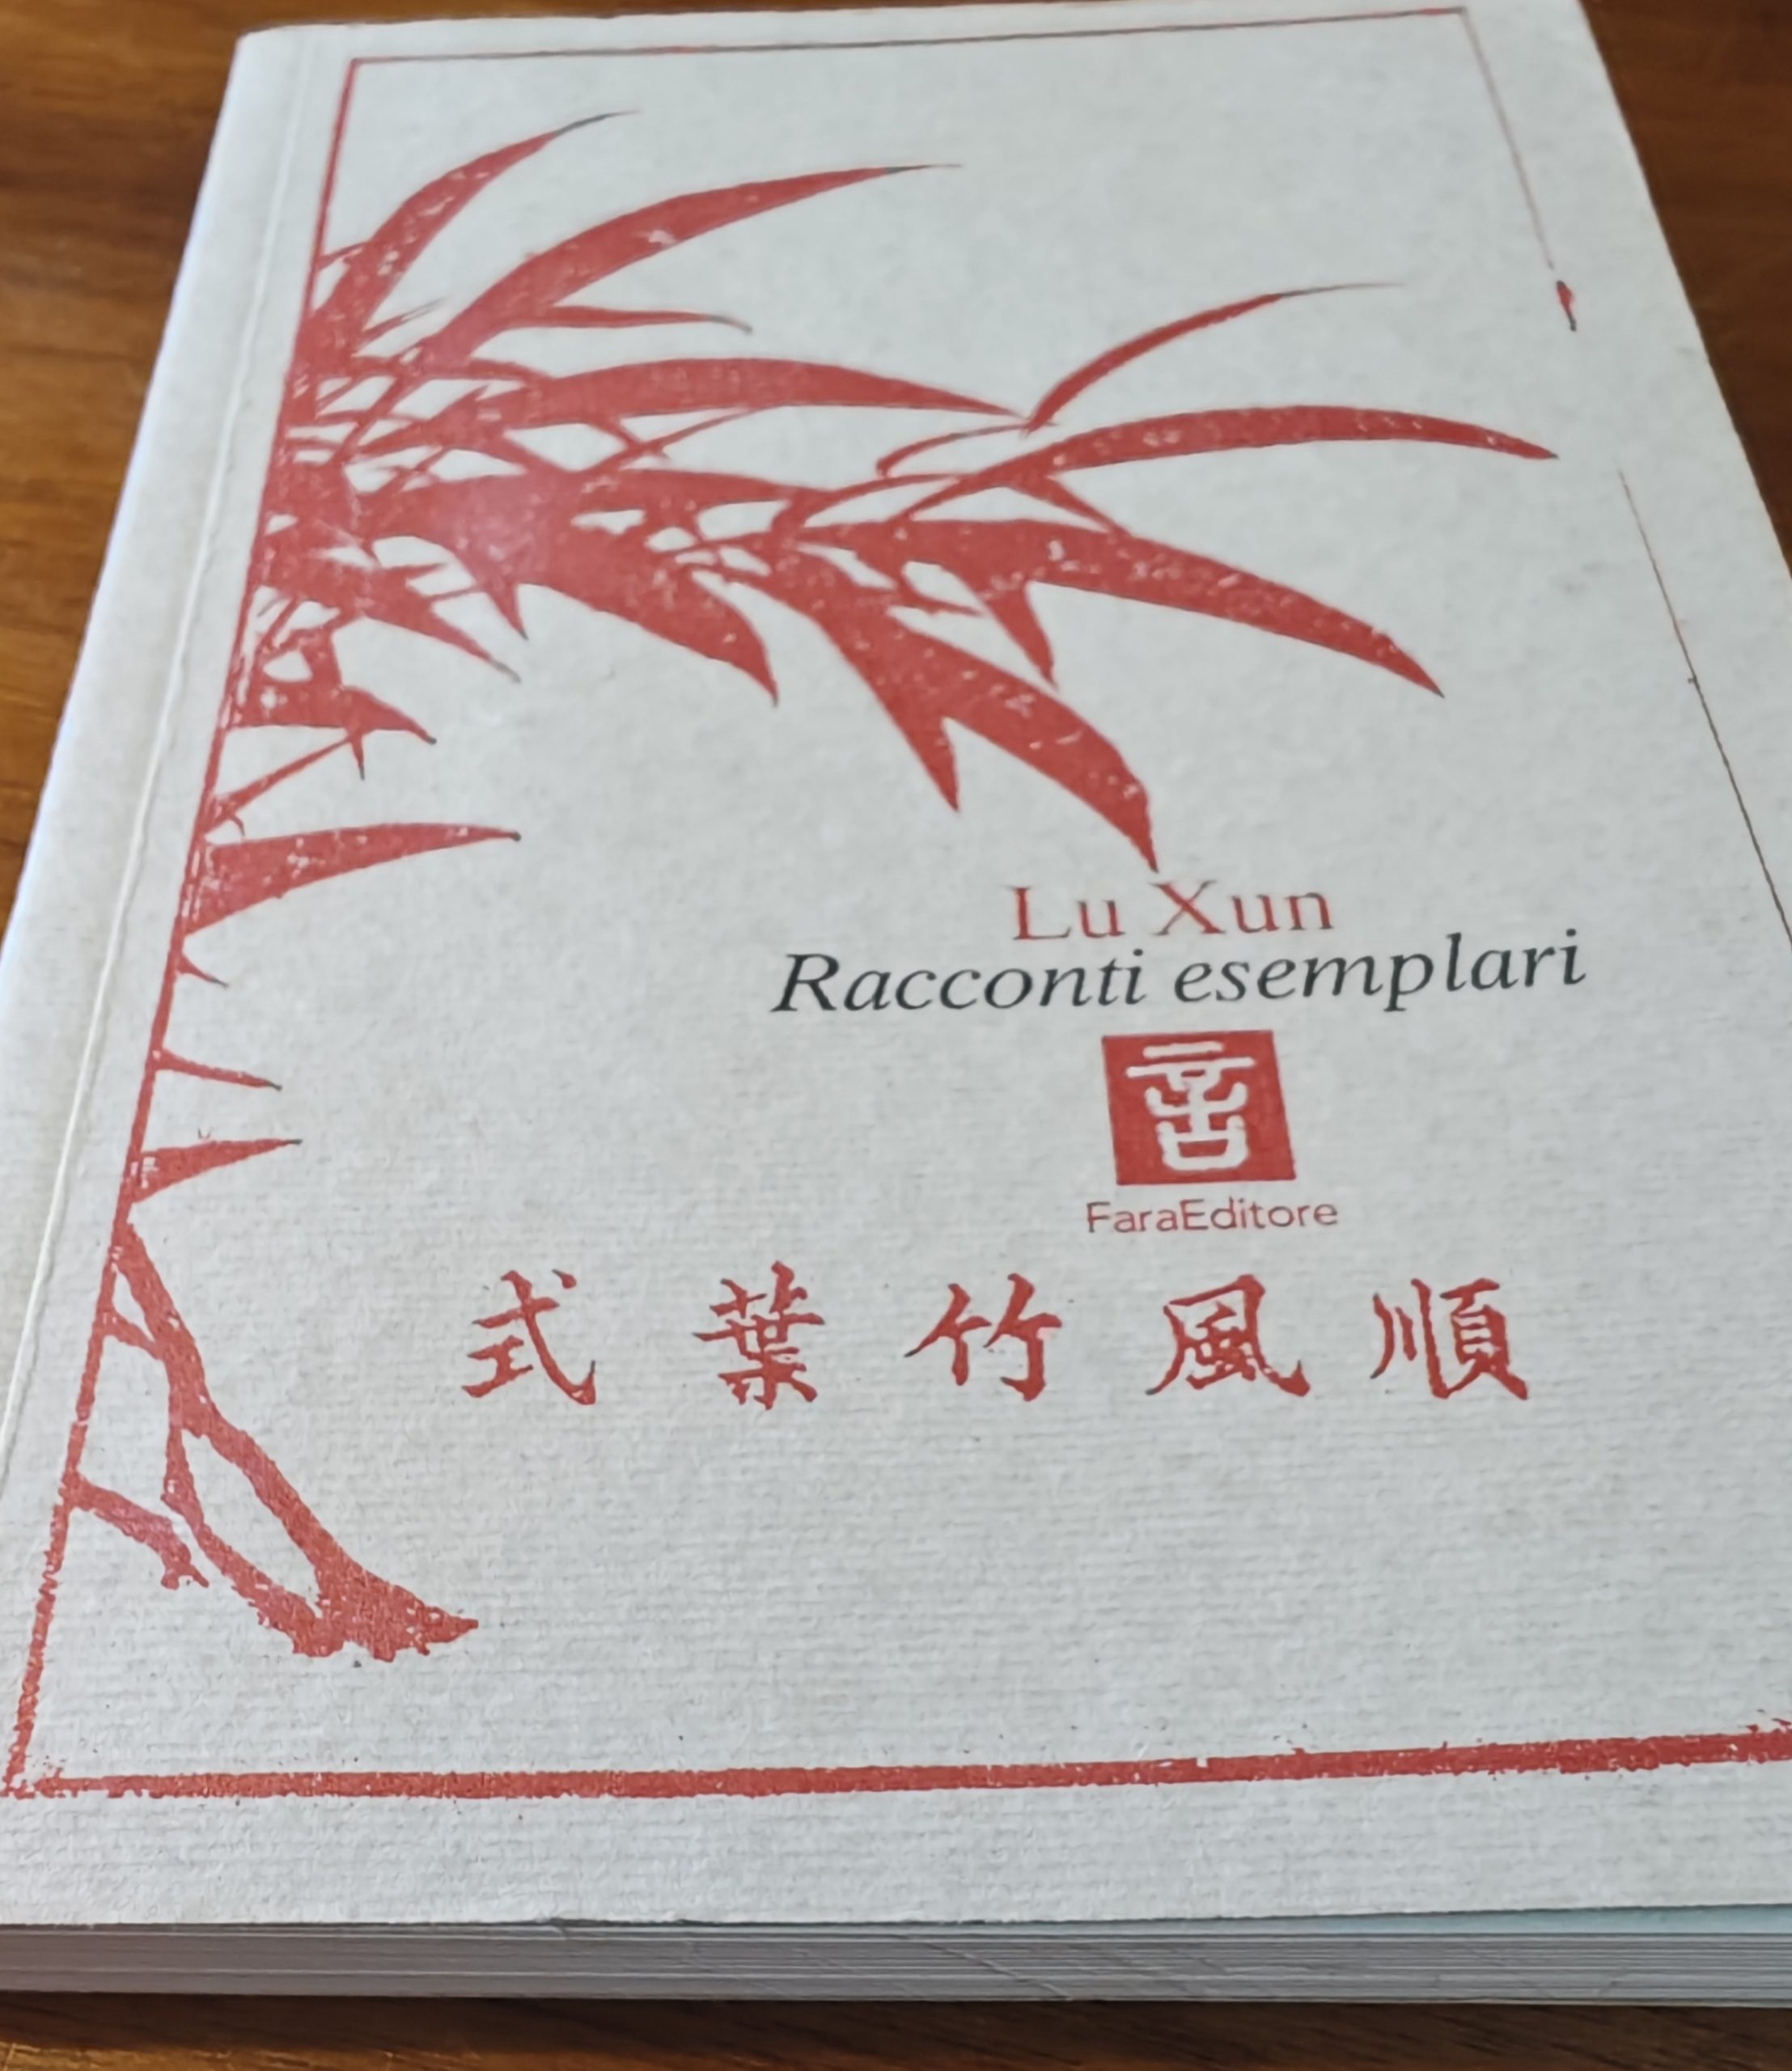 Alla scoperta di Lu Xun: un’icona letteraria cinese e il suo impatto nel mondo moderno